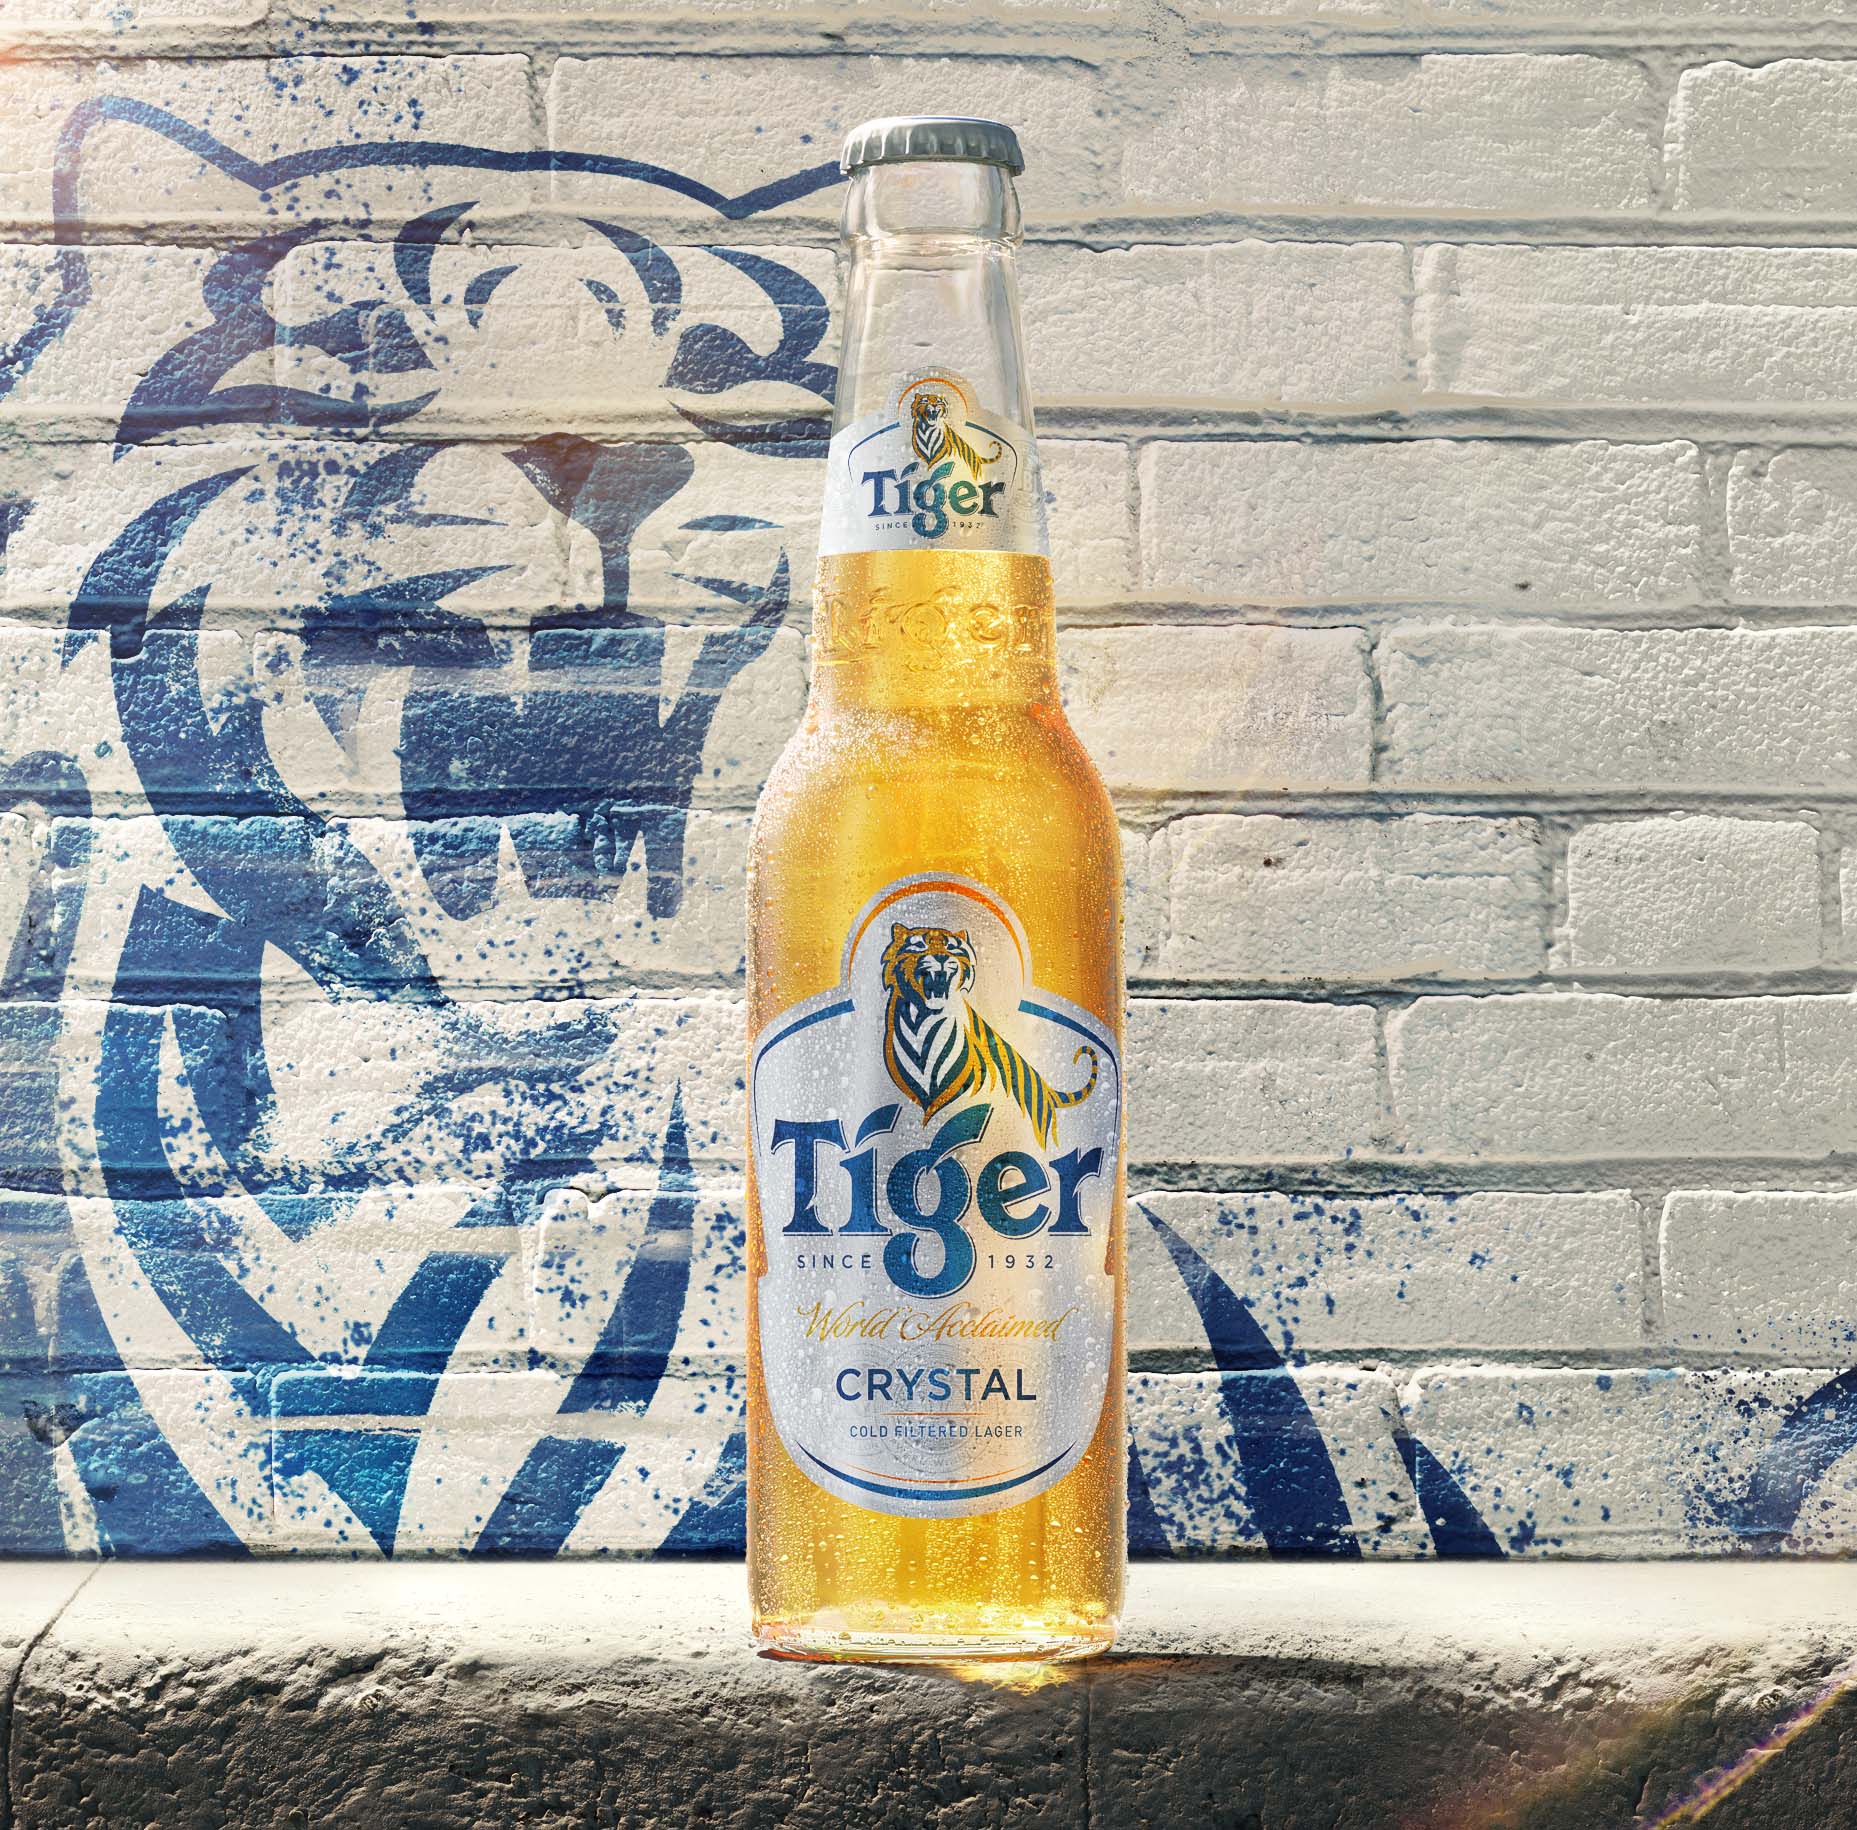 Cách phân biệt bia Tiger giả và thật đơn giản bằng mắt thường - Bia Tiger